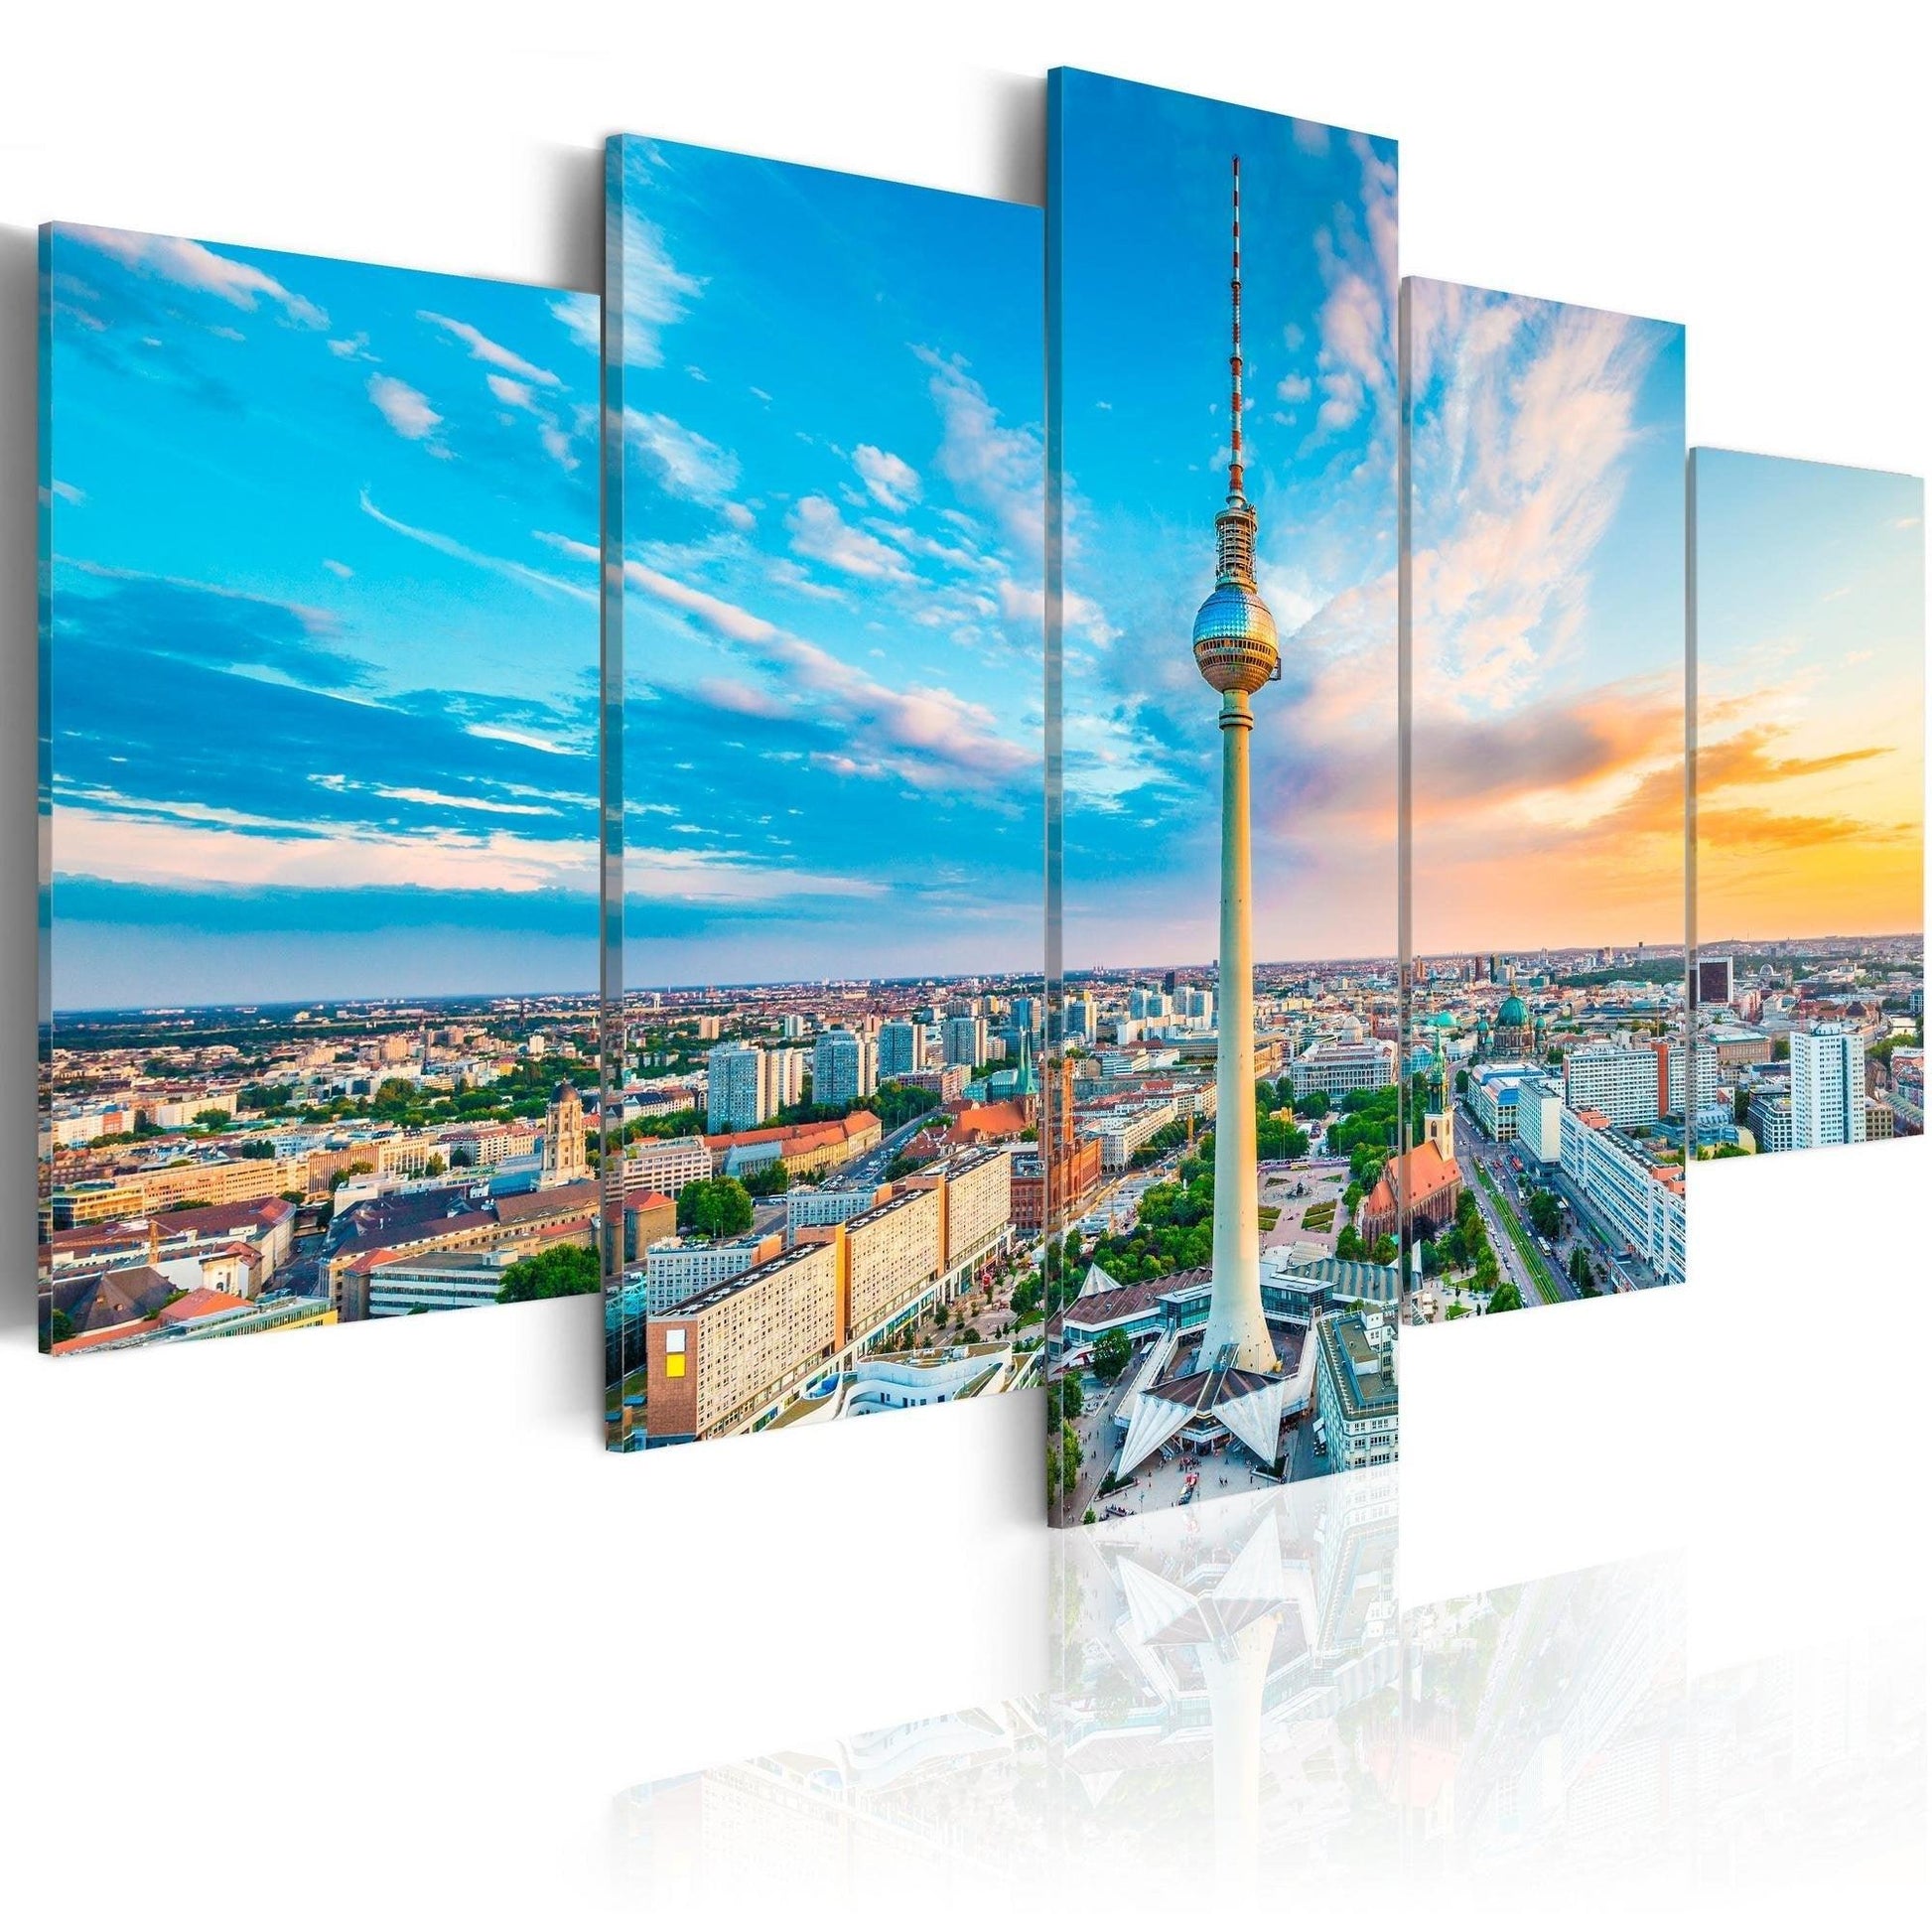 Canvas Print - Berlin TV Tower, Germany - www.trendingbestsellers.com